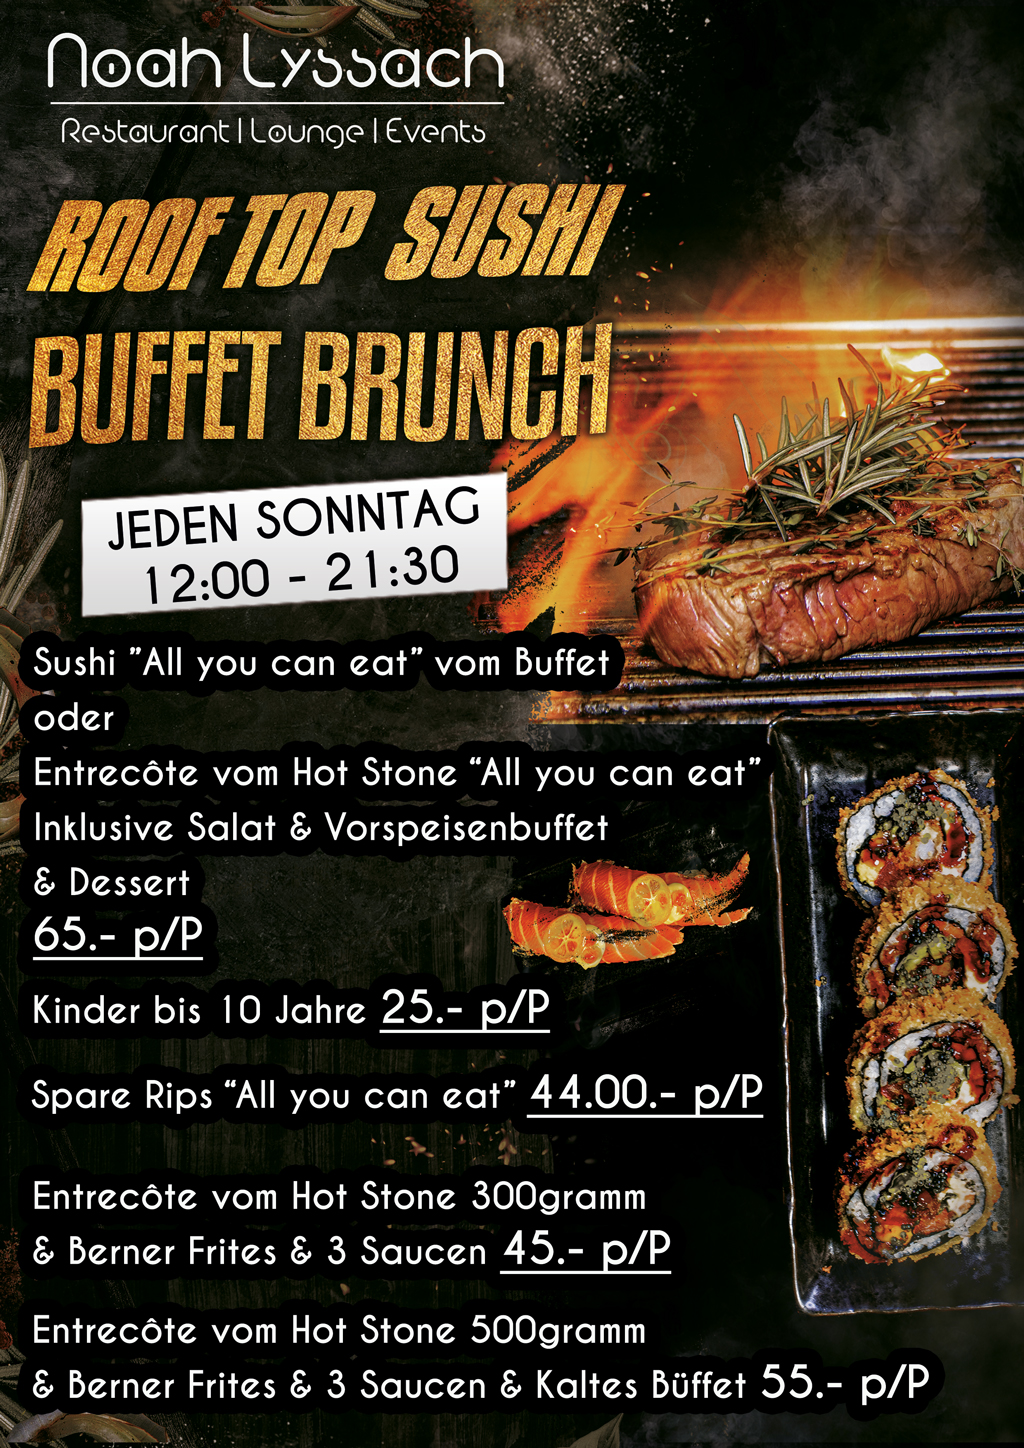 Roof_top_sushi_brunch_buffet_lyssach_feb23